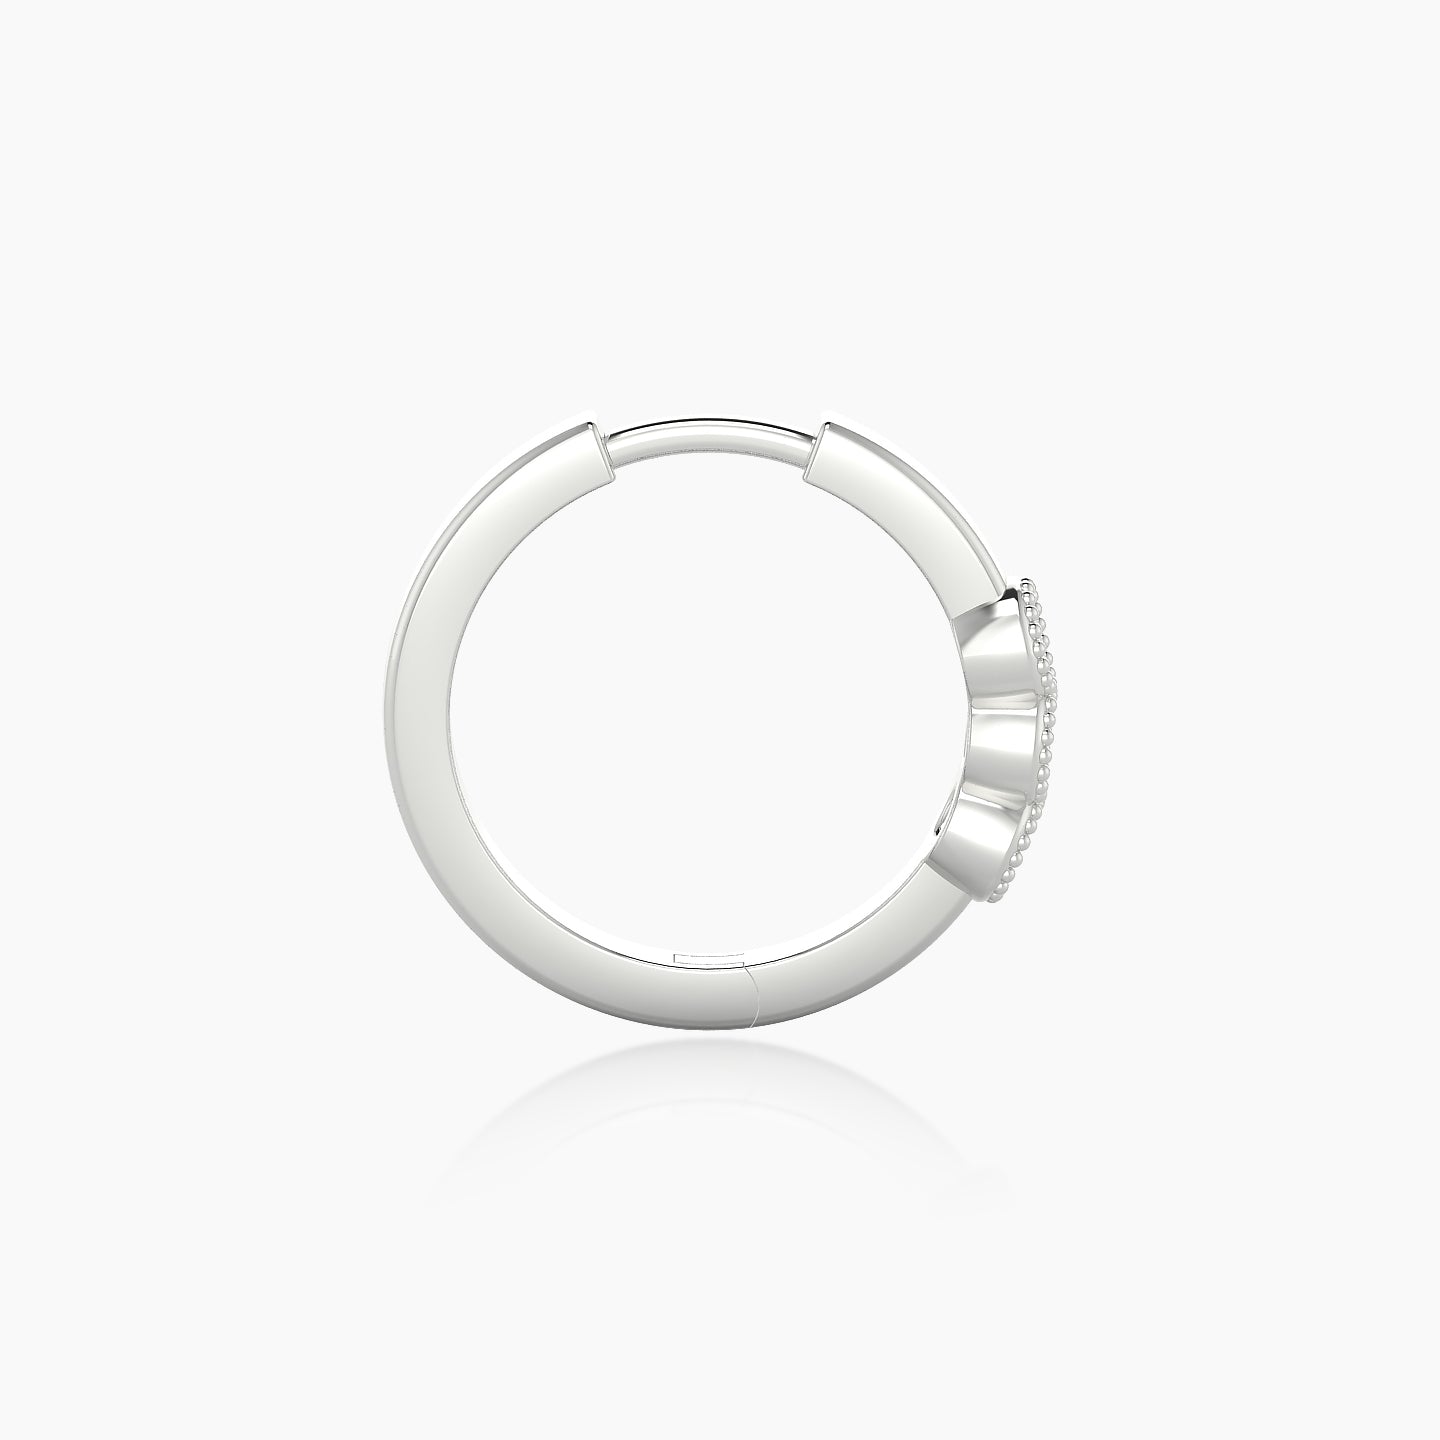 Irene | 18k White Gold 9.5 mm Trilogy Diamond Nose Ring Piercing